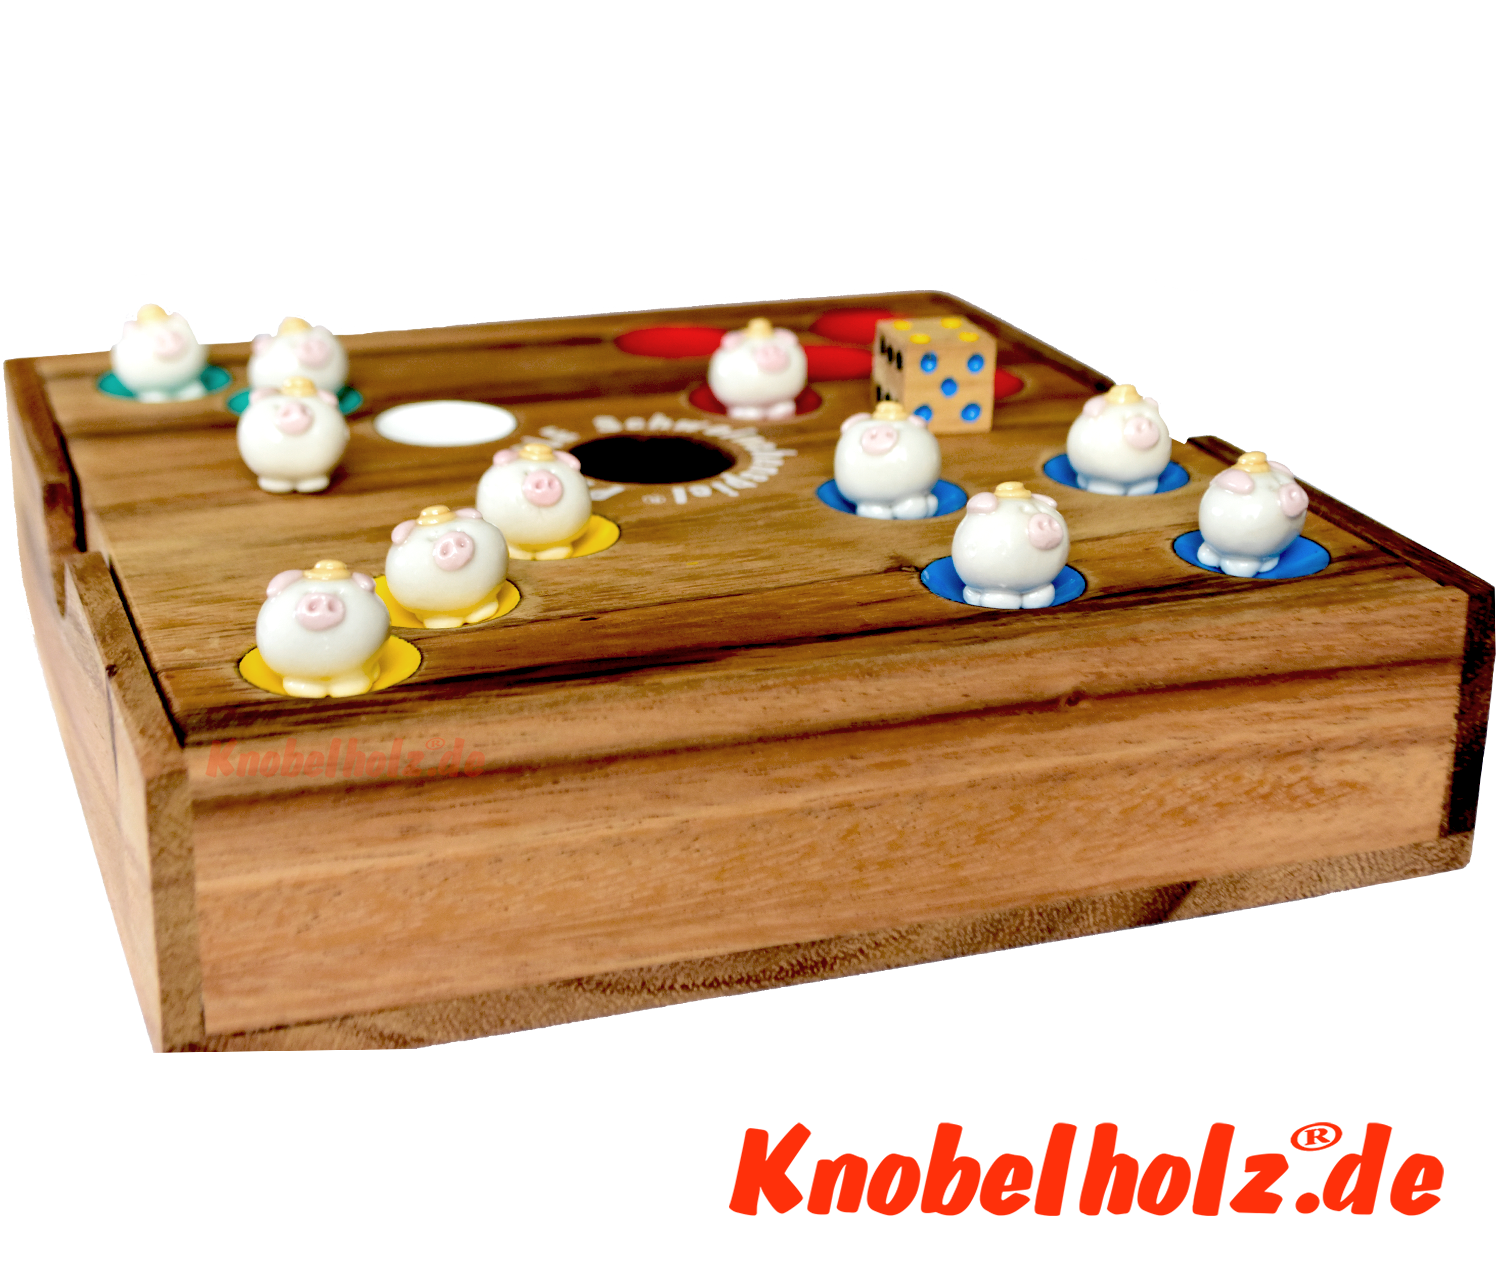 Pig Hole Schweinchenspiel, das Familien Würfelspiel in einer Holz Spielebox mit 60 Ferkelchen